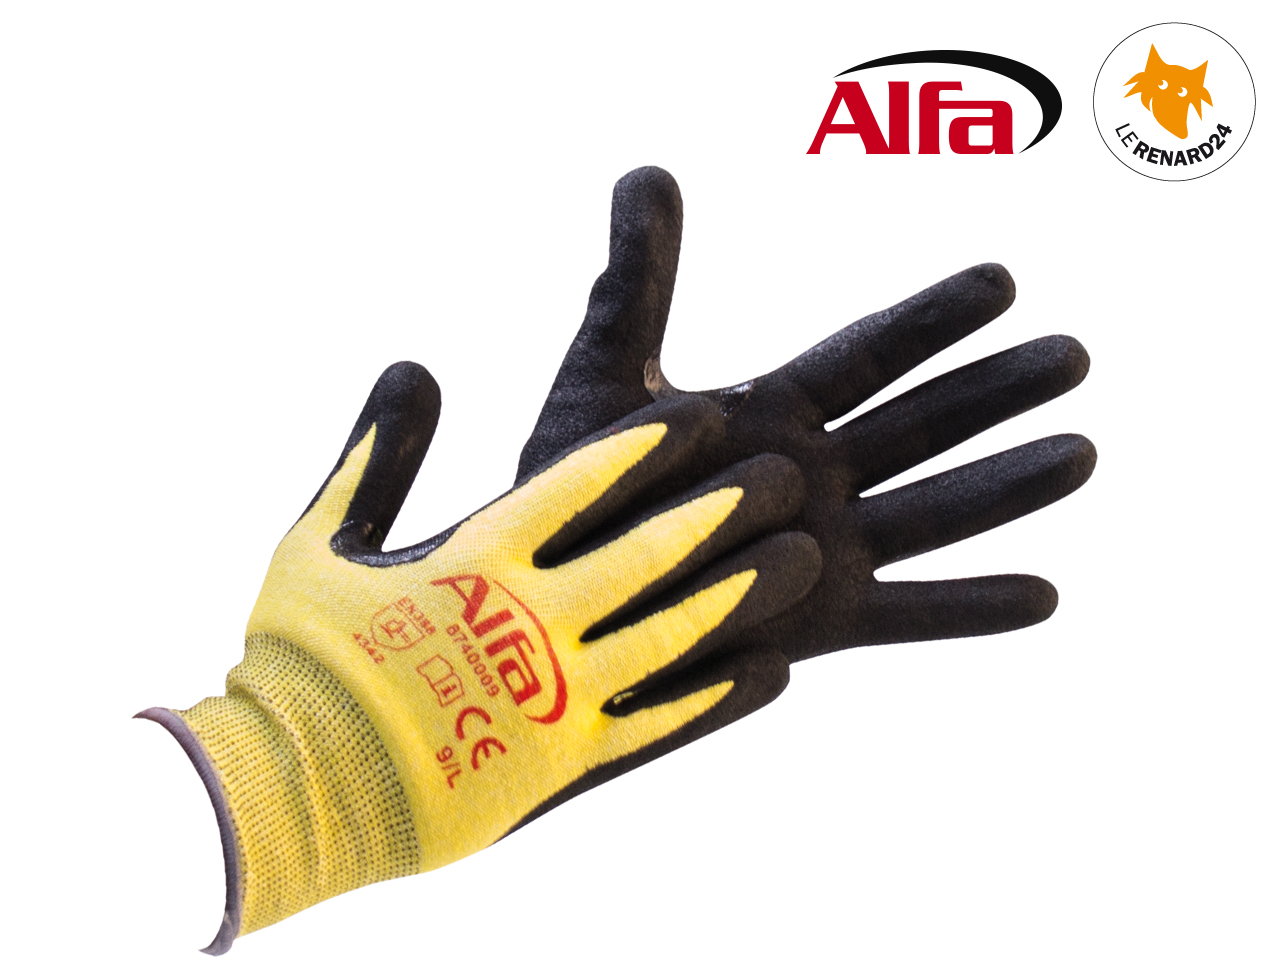 Gant de travail de protection anti coupures en nitrile - ALFA 874